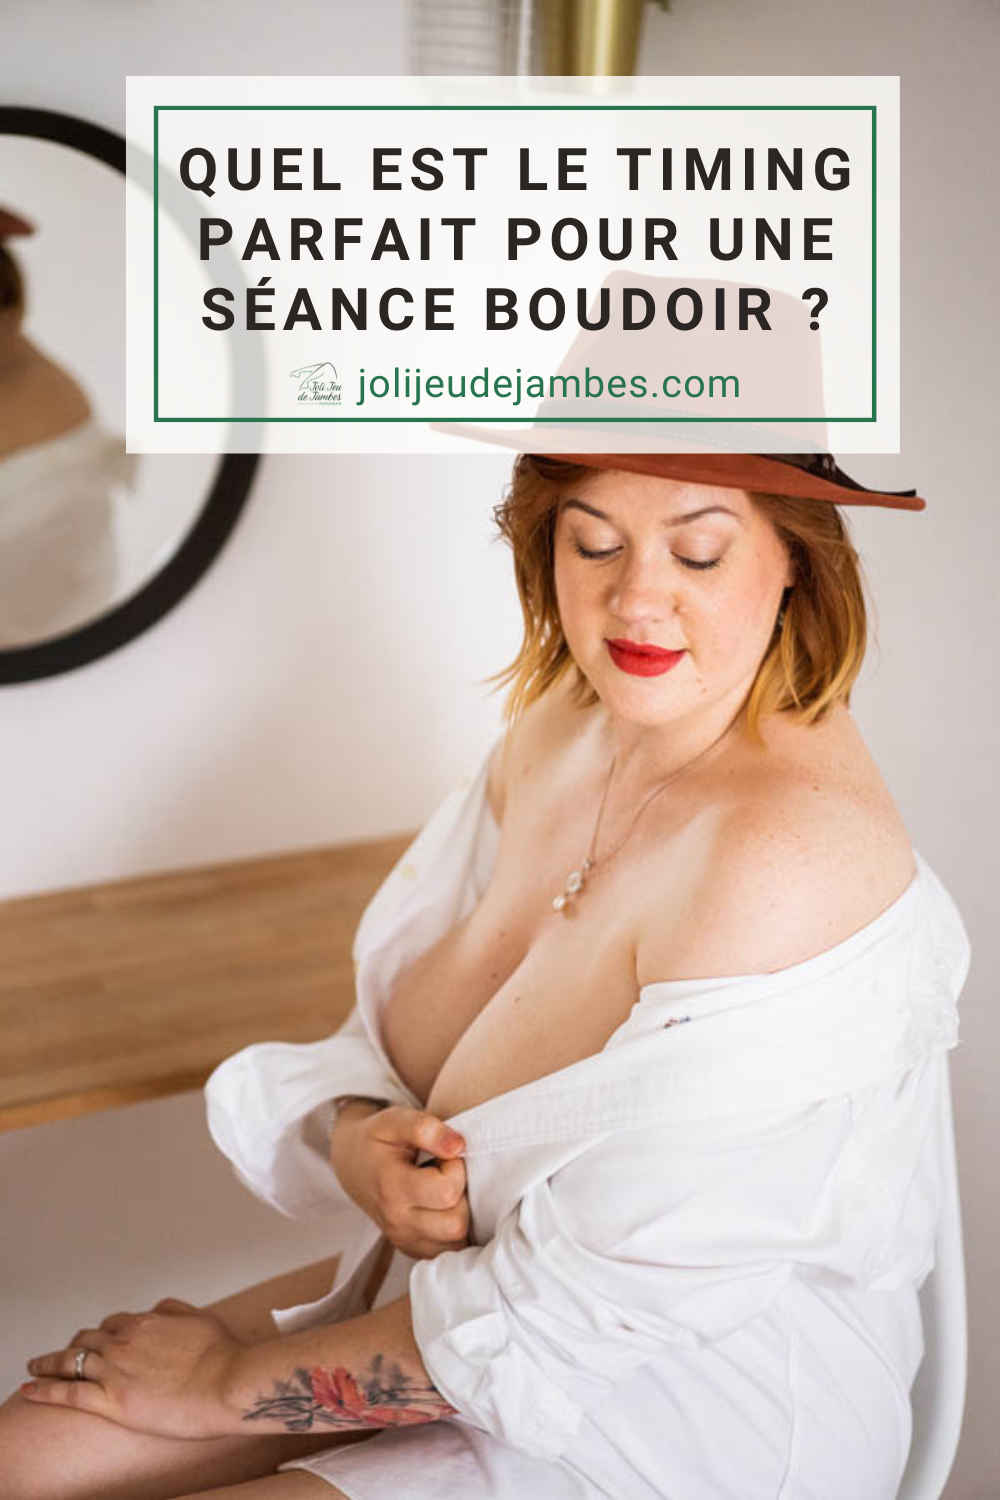 https://www.jolijeudejambes.com/wp-content/uploads/2023/06/quel-est-le-timing-parfait-seance-boudoir.png